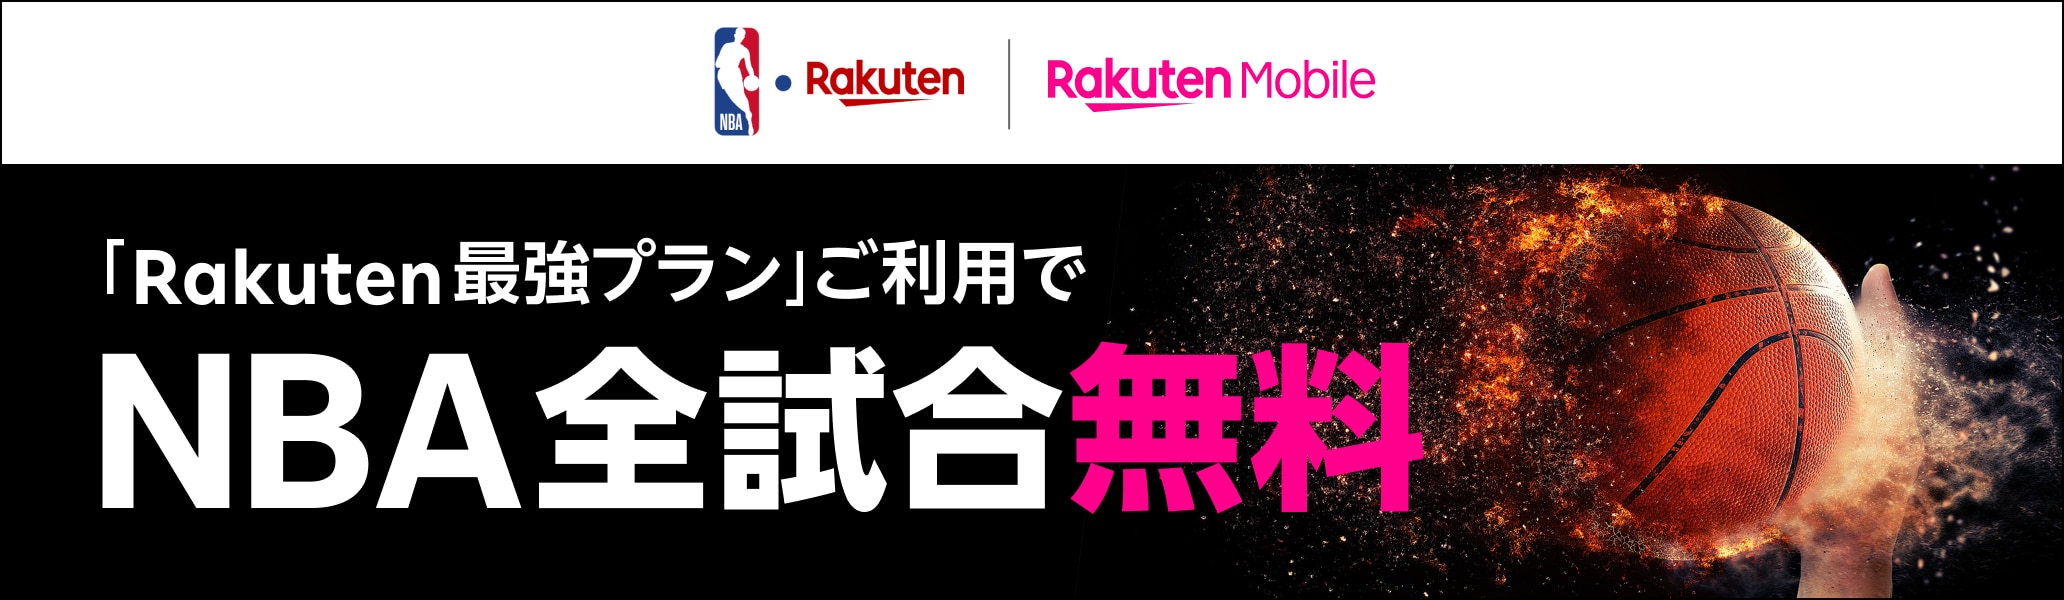 Rakuten Mobile Rakuten最強プランご利用でNBA全試合無料